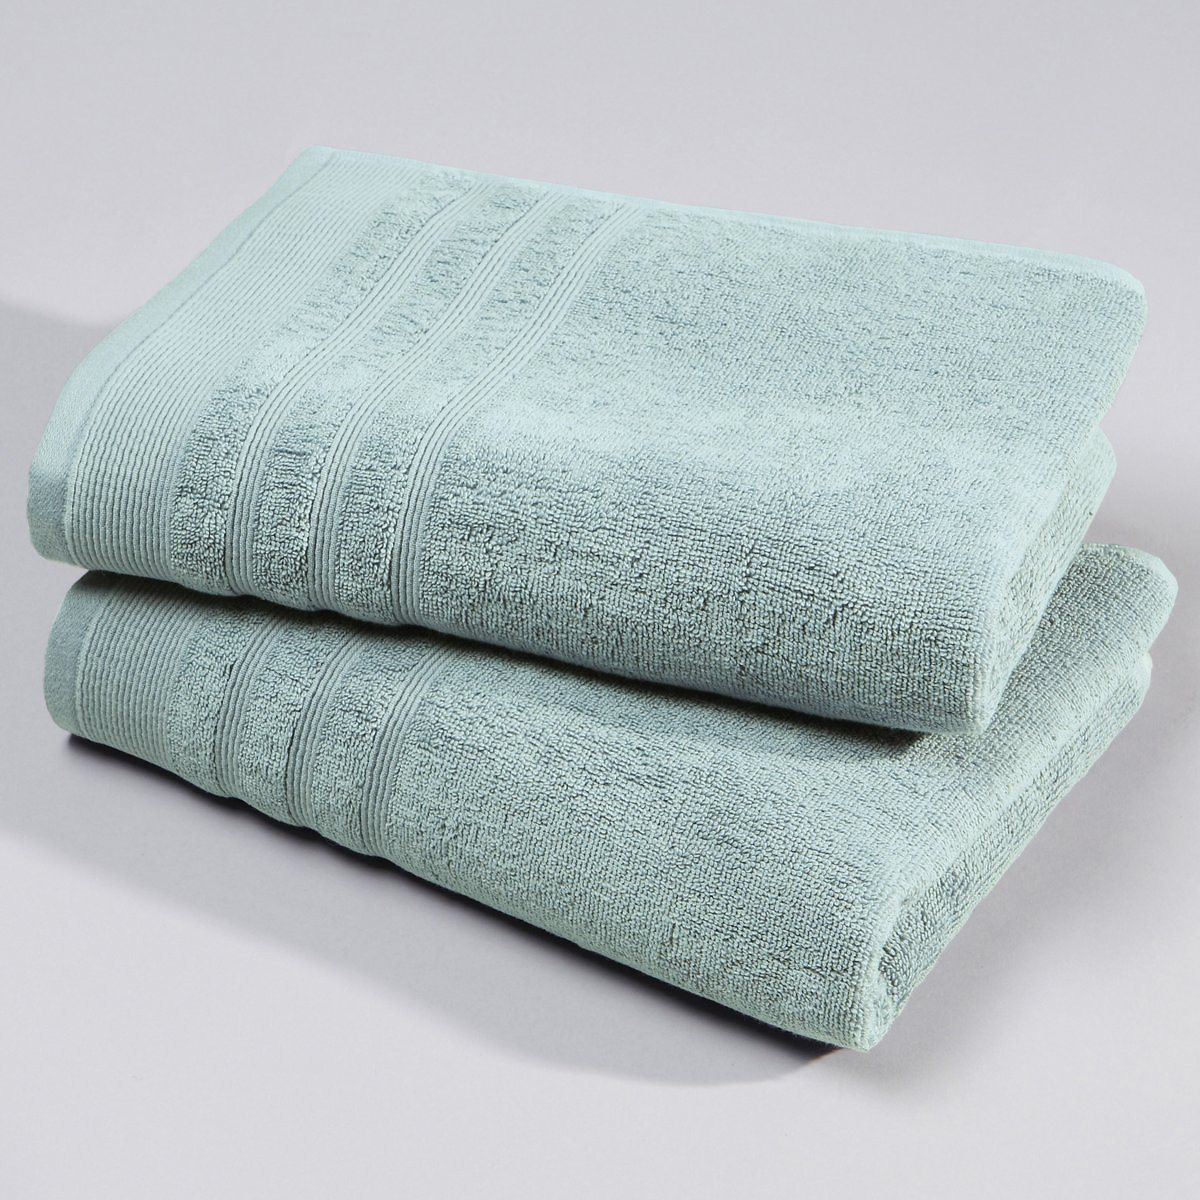 Набор полотенец 600 скидка 4. Хлопчатобумажное полотенце. Best quality набор полотенец. Как выглядит хлопчатое полотенце. Цвет натурального хлопкового полотенца не крашеный.